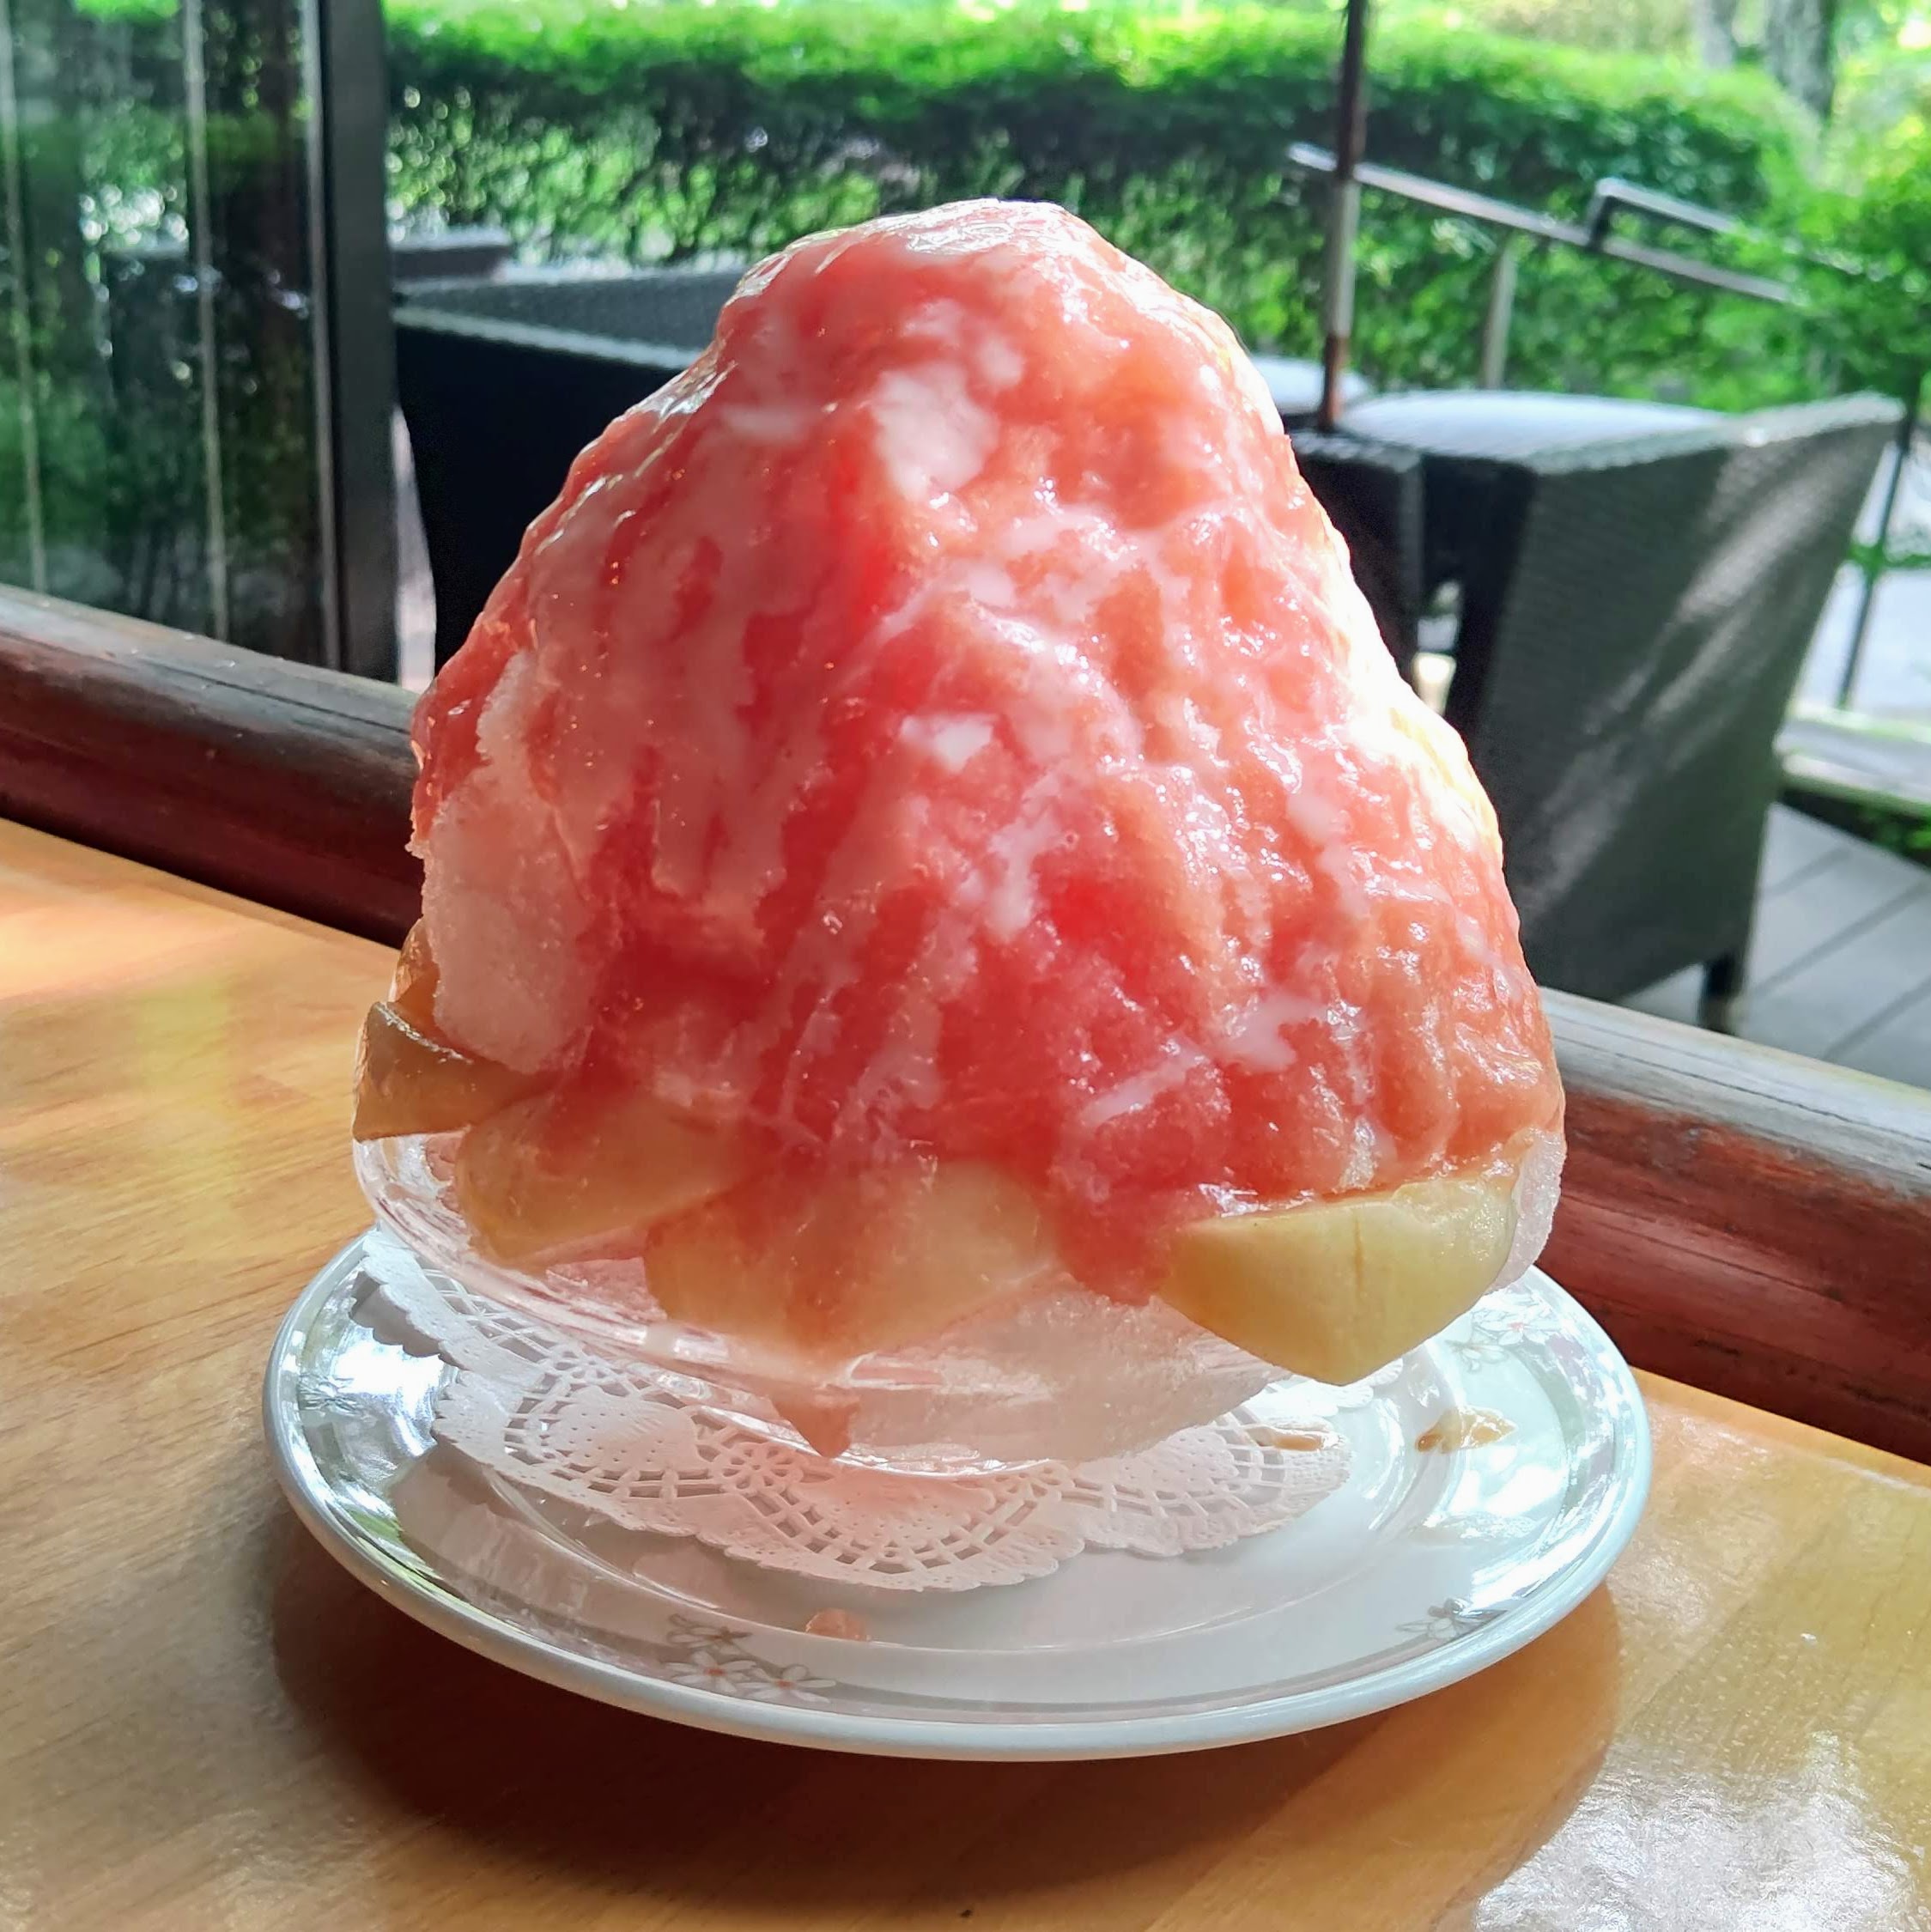 長野県北佐久郡 万平ホテル カフェテラス 涼夏香る桃のかき氷